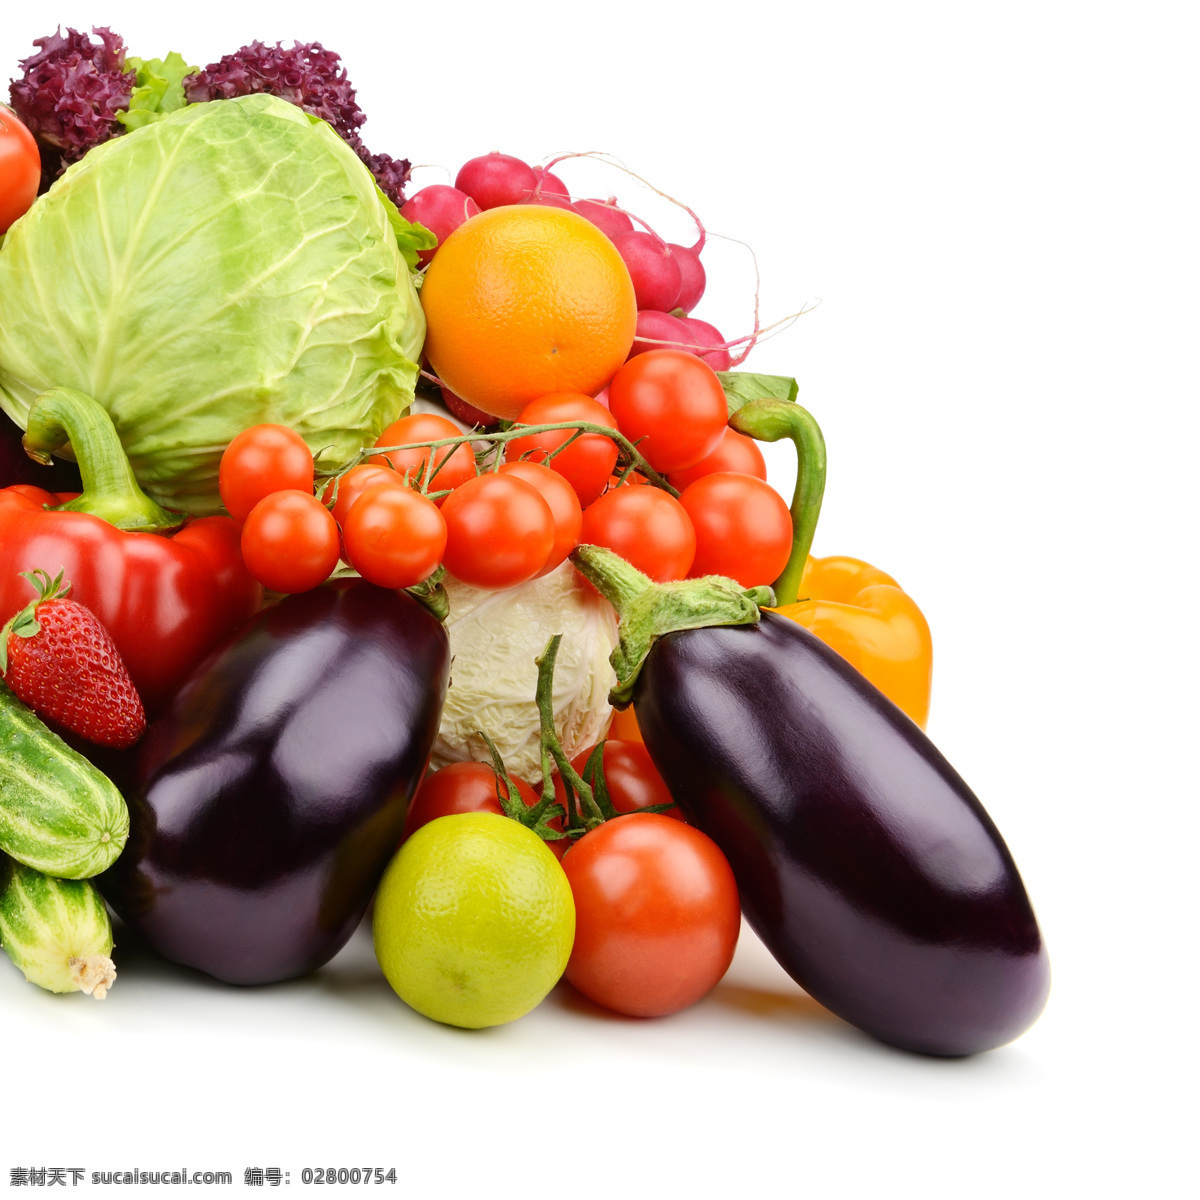 蔬菜水果摄影 新鲜蔬菜 包菜 茄子 番茄 蔬菜摄影 新鲜水果 水果摄影 水果蔬菜 餐饮美食 白色